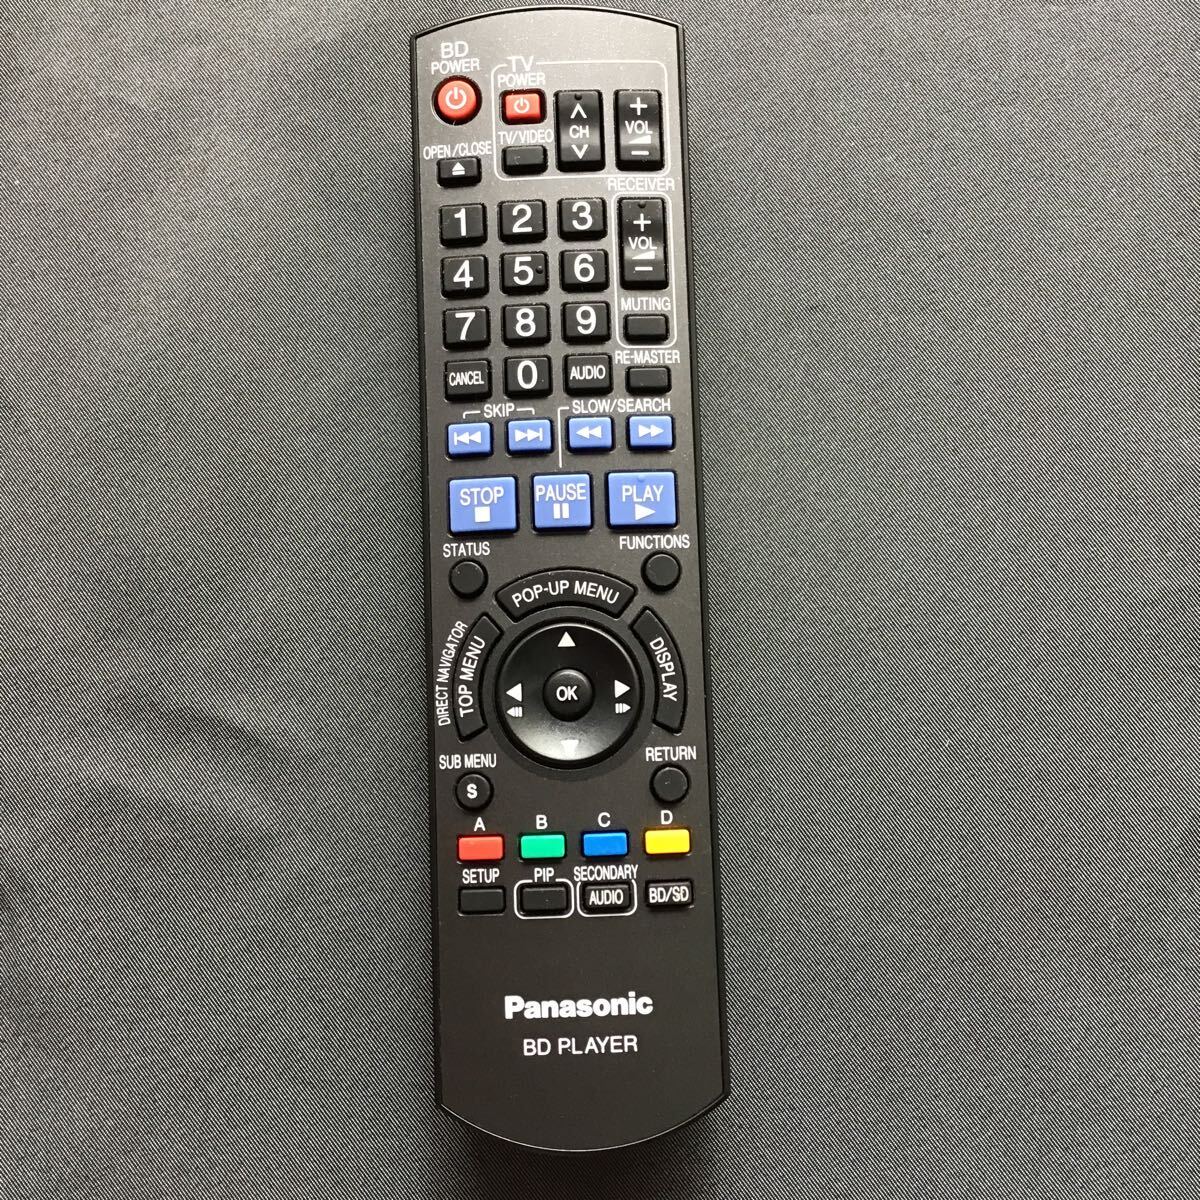  Panasonic BD player for remote control N2QAYB000265